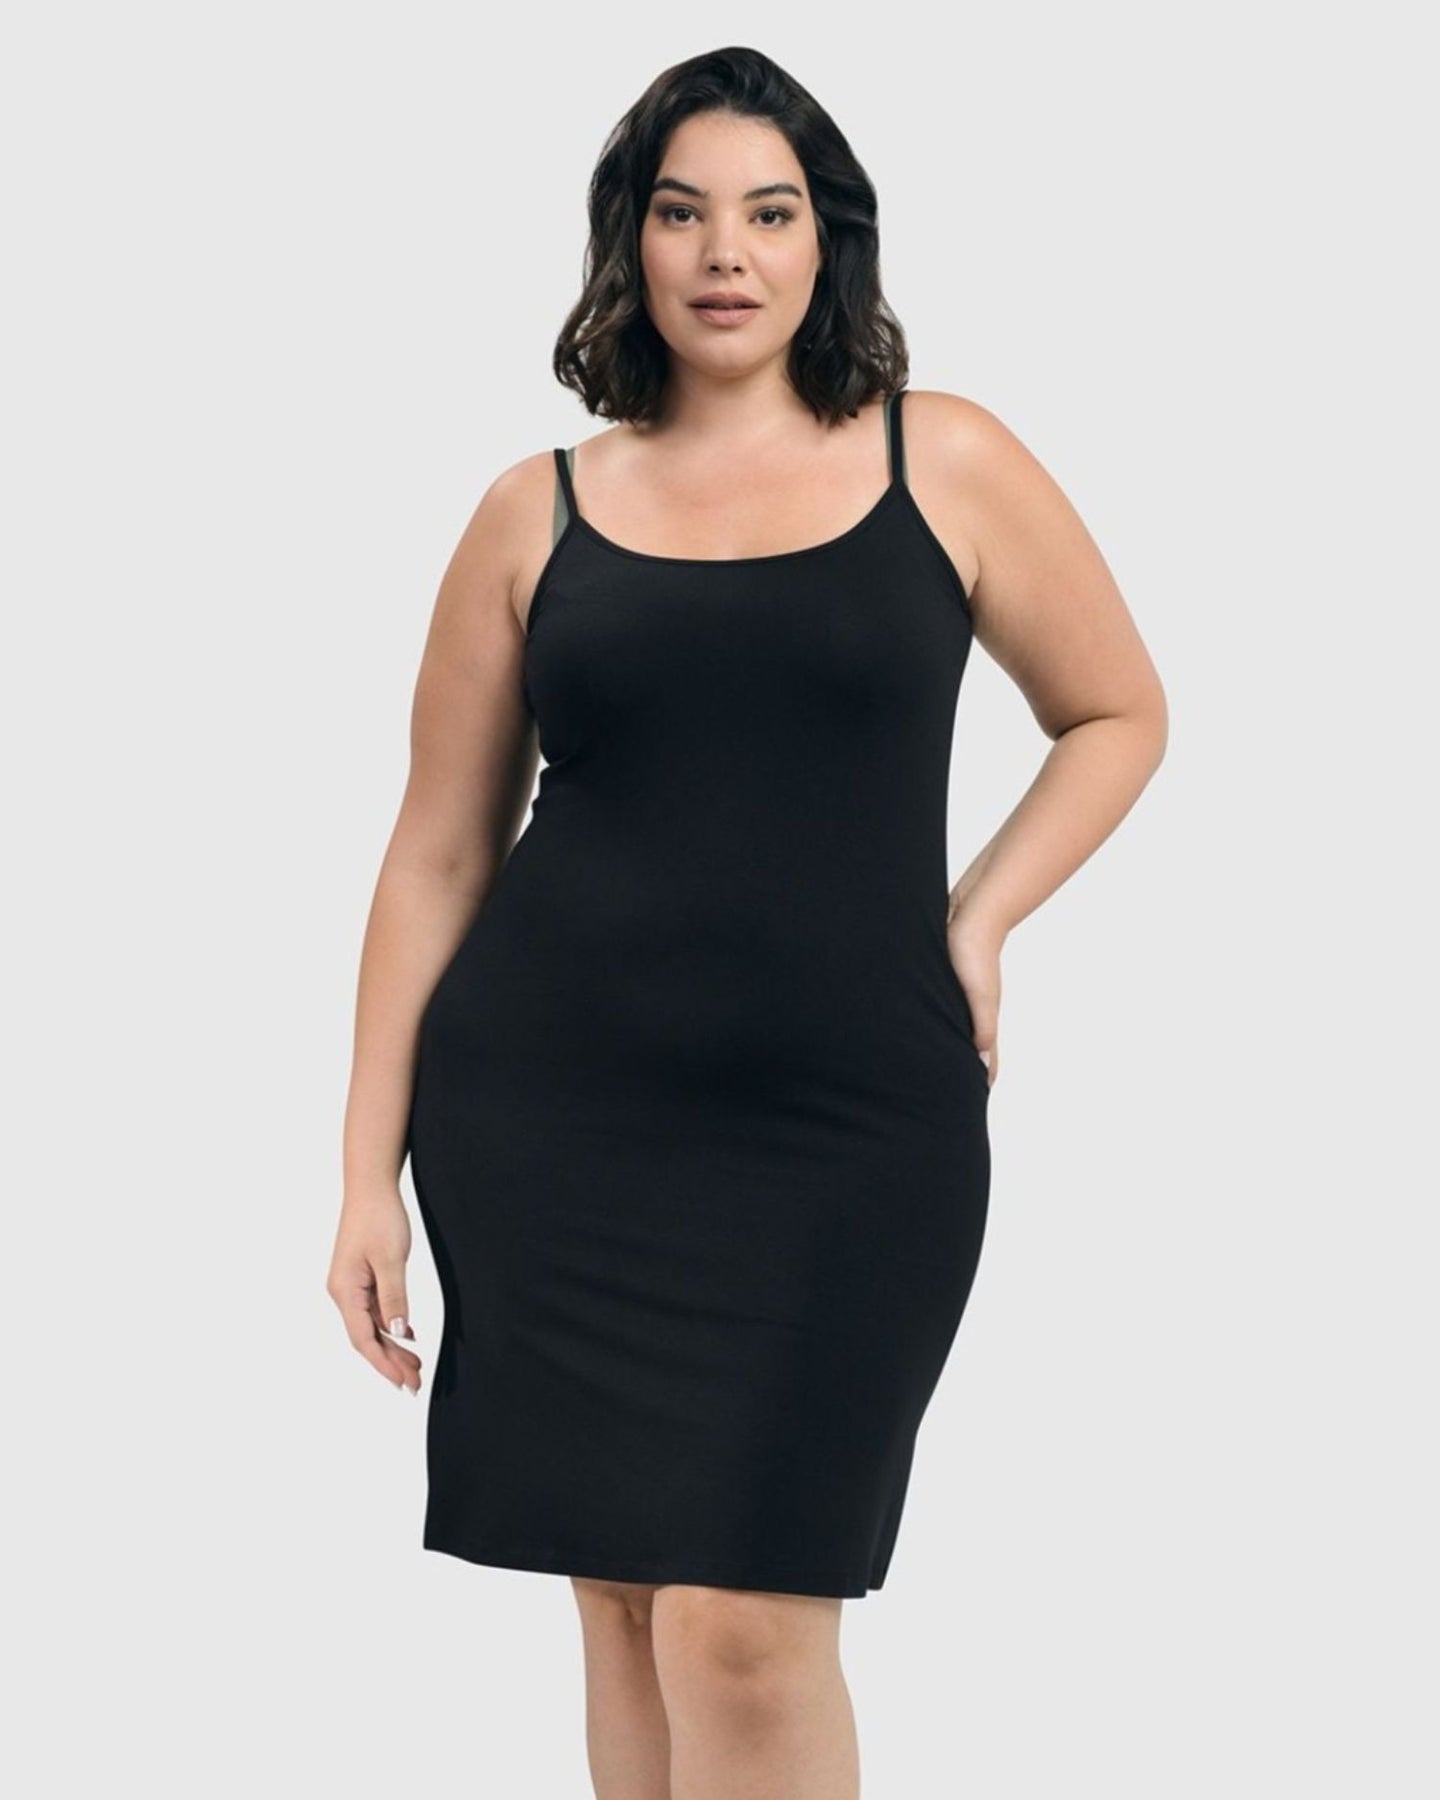 Essential Slip Dress, Black – Alembika U.S.